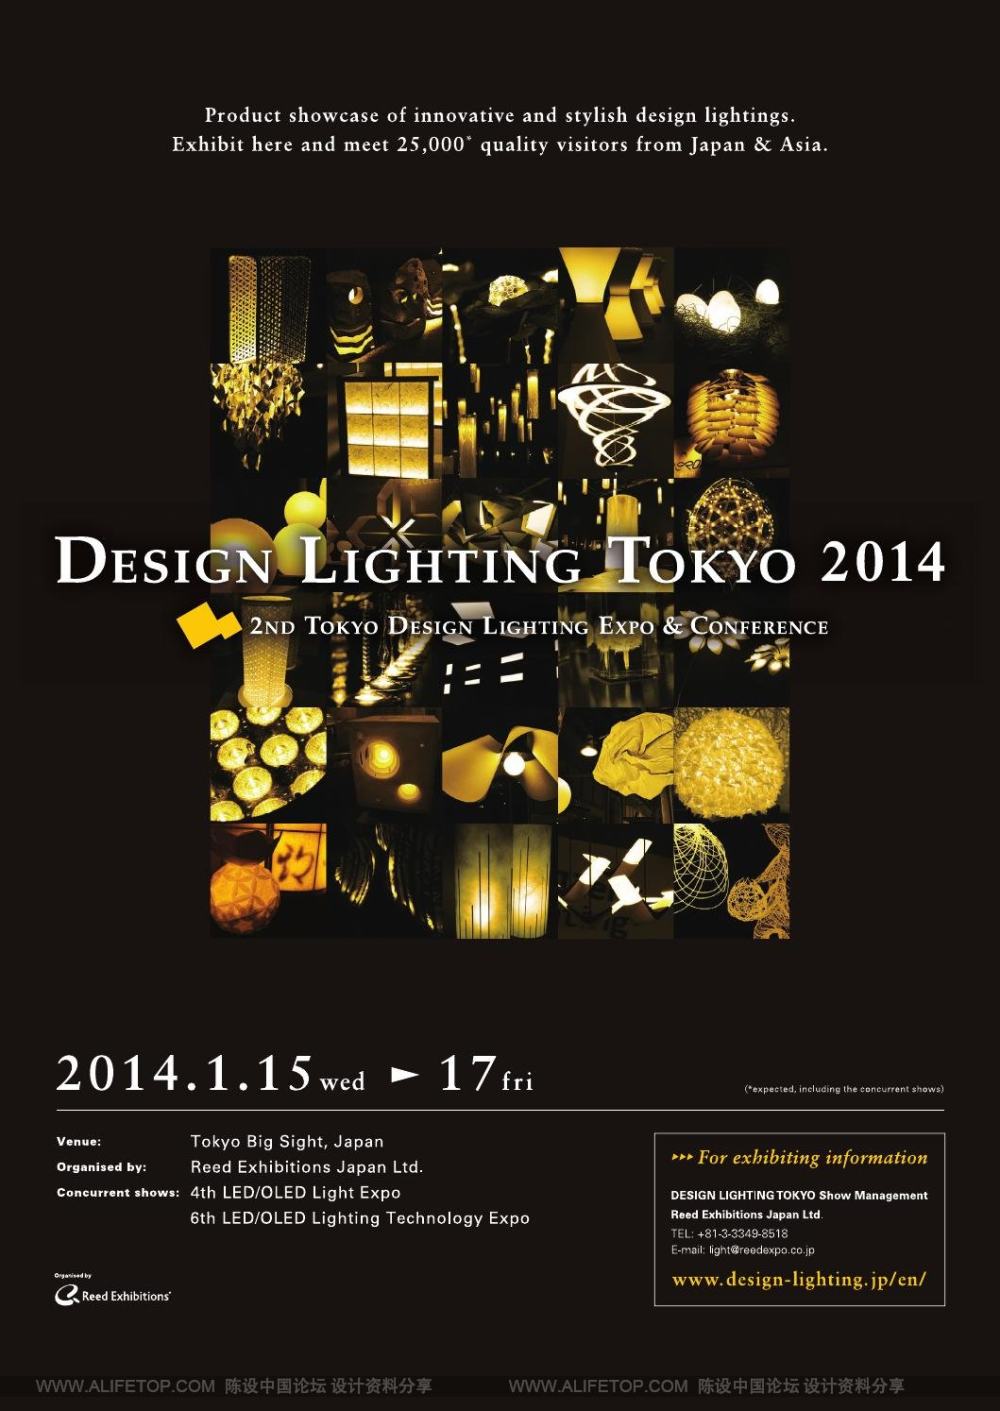 darc灯具照明设计杂志_darc灯具照明设计杂志 (47).jpg